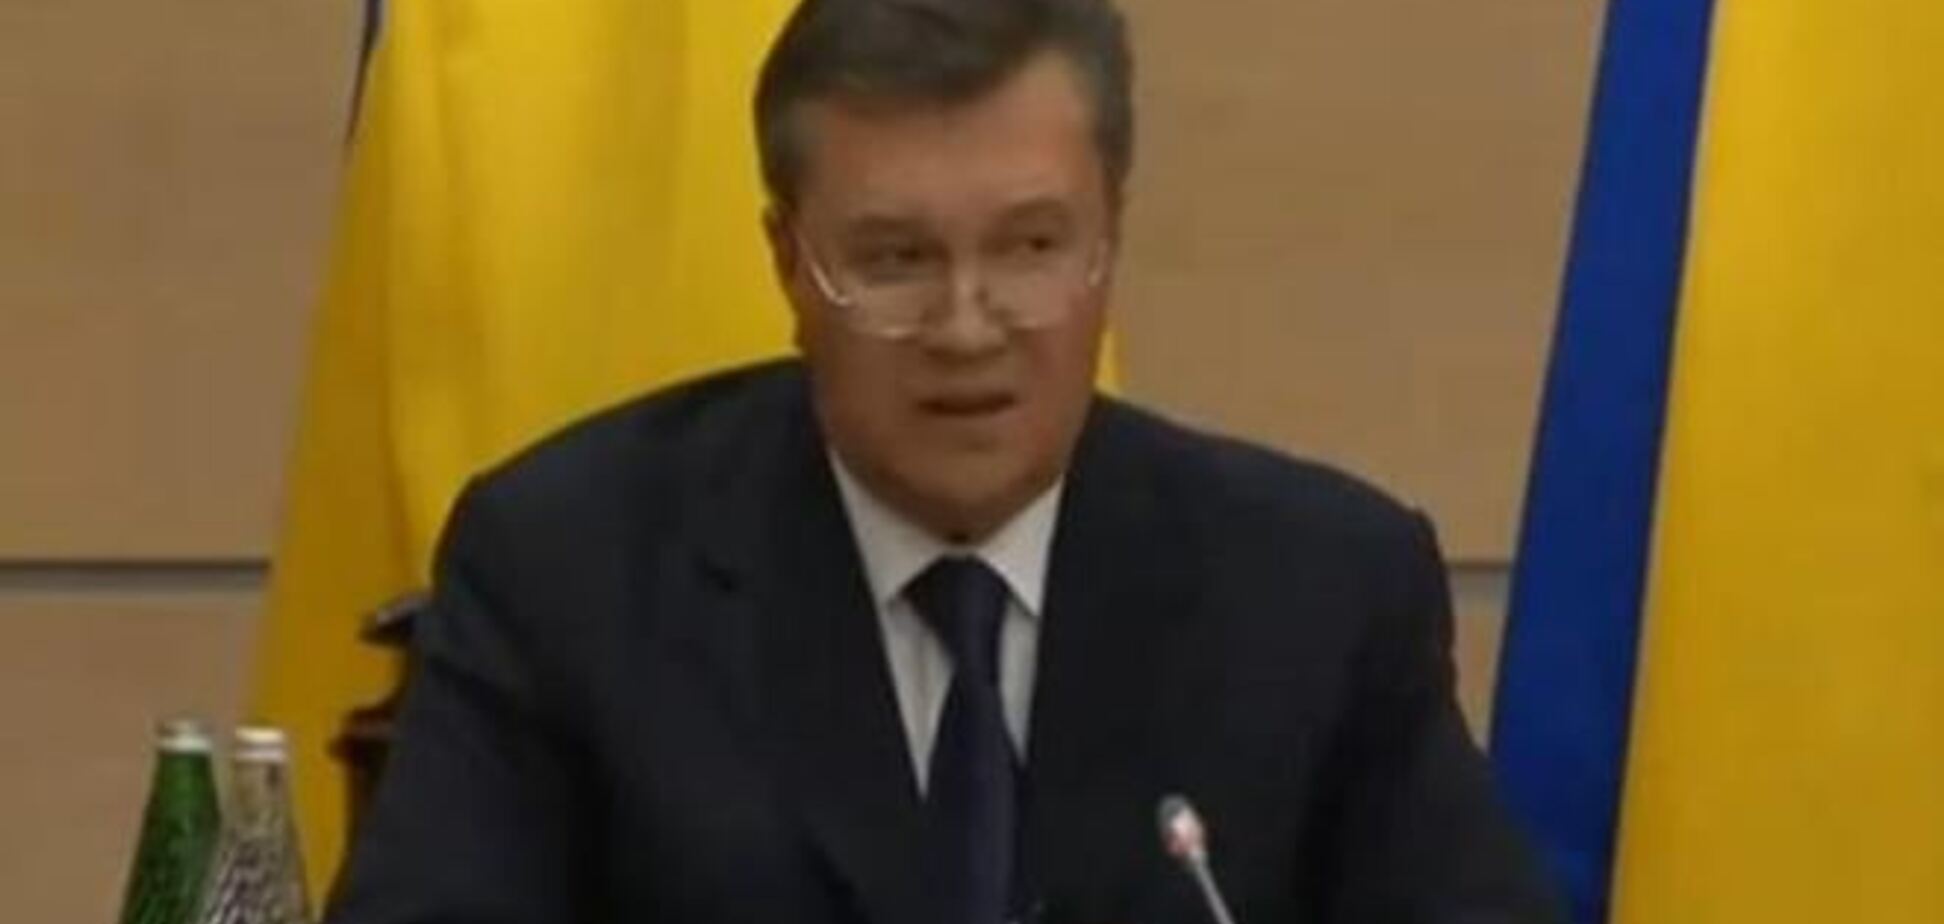 Политолог: если бы Янукович выступал в Москве, Путин бы нес за него ответственность